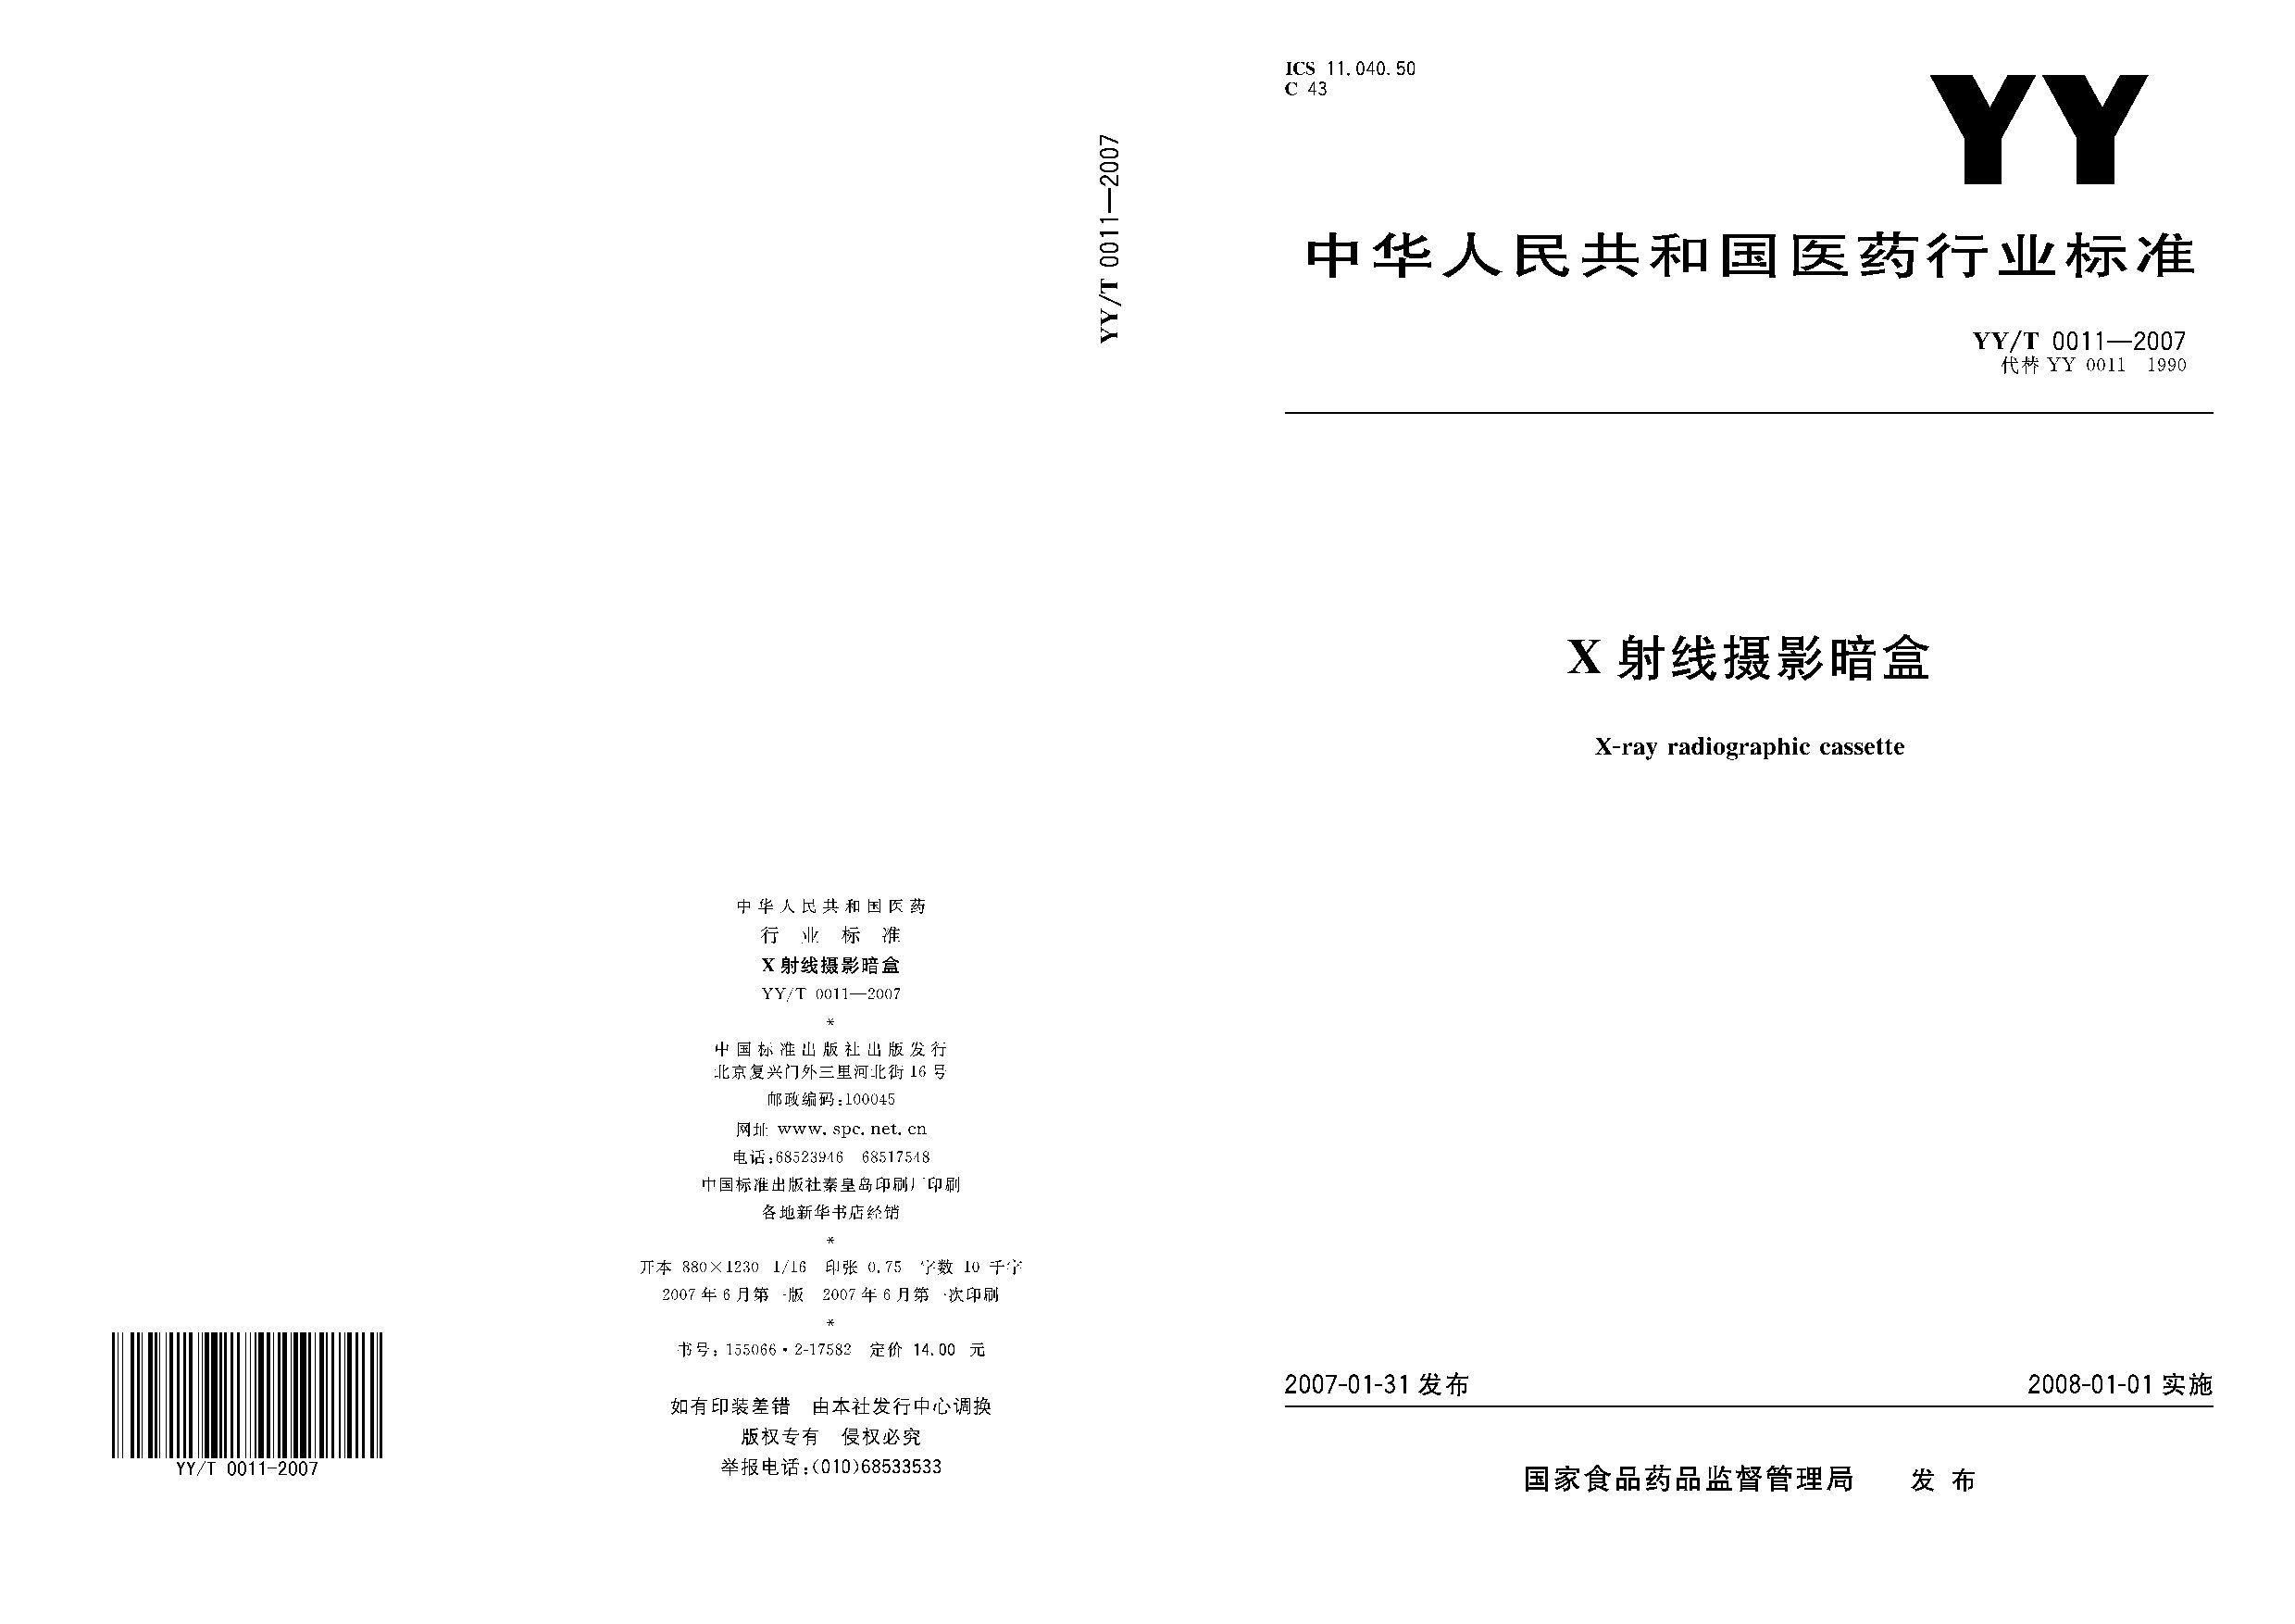 YY/T 0011-2007封面图